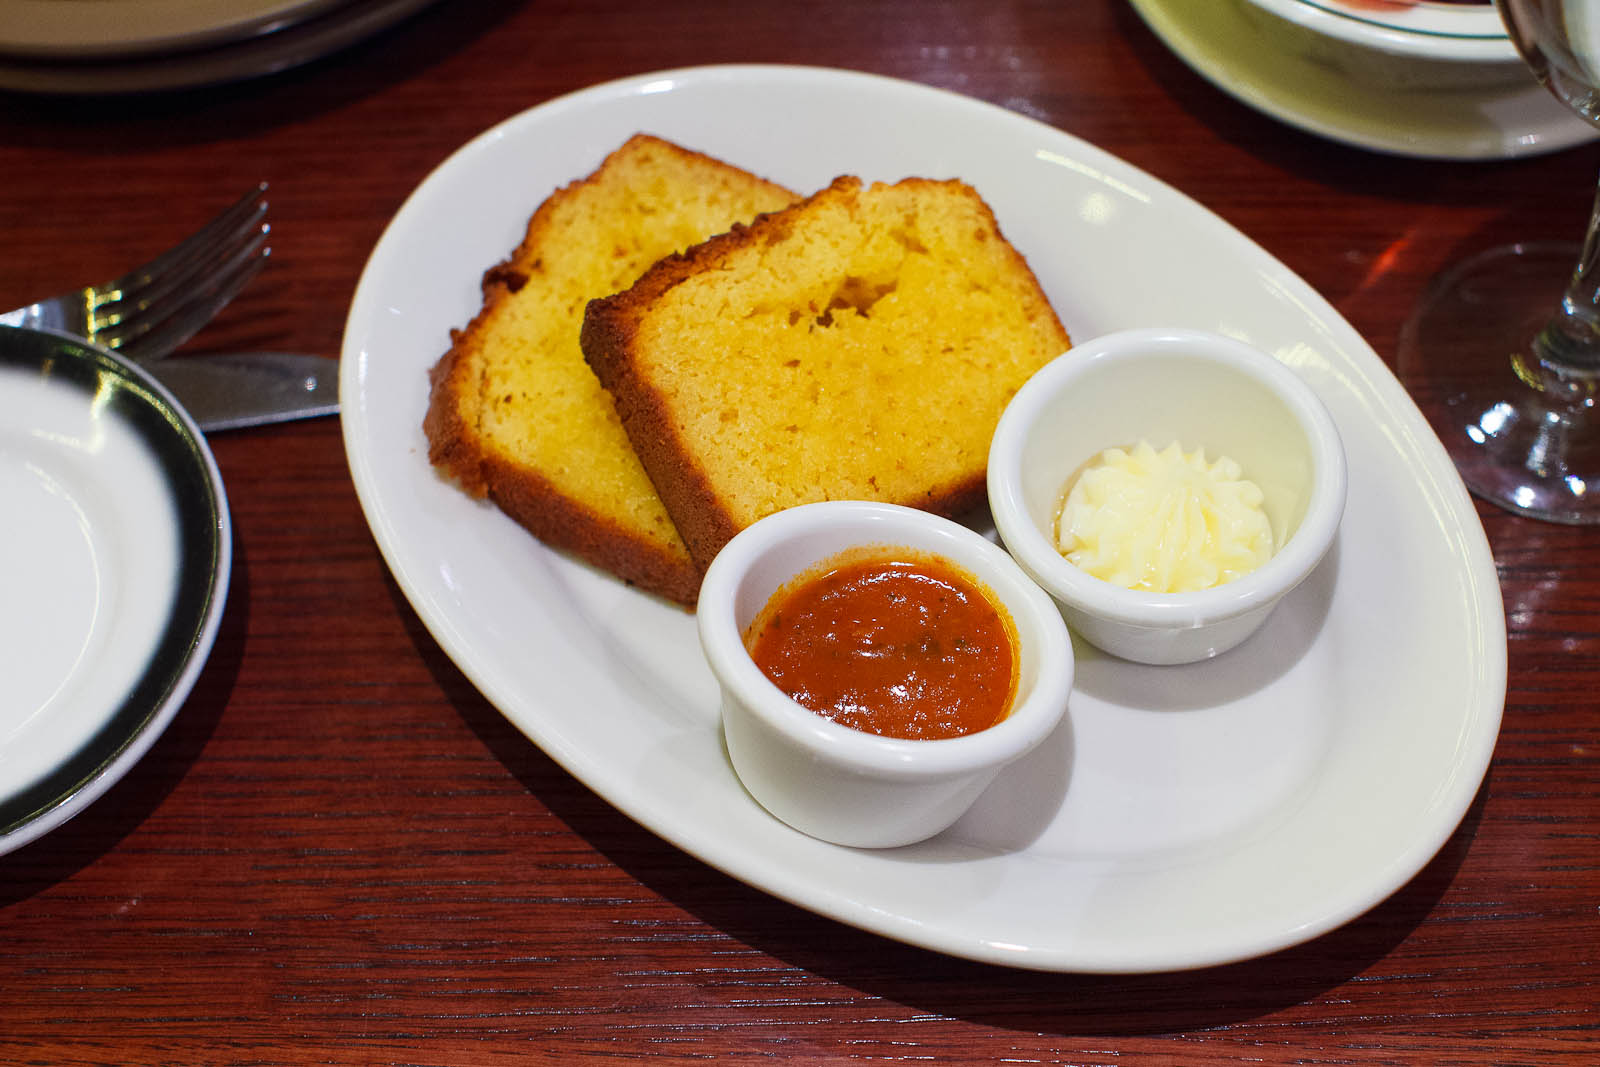 Corn bread - honey butter, tomato jam ($5)